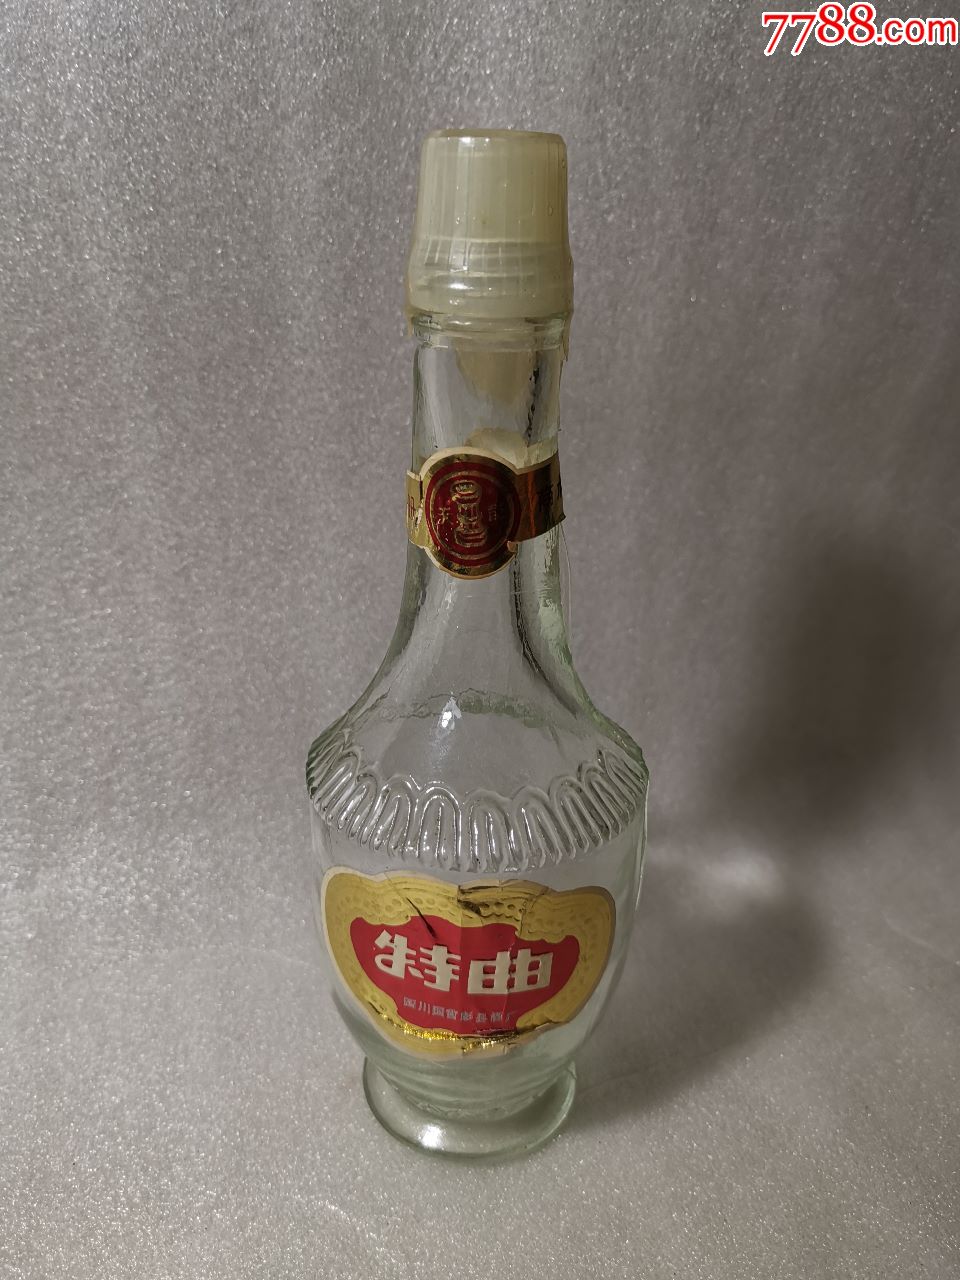 四川国营的半斤装酒瓶一个